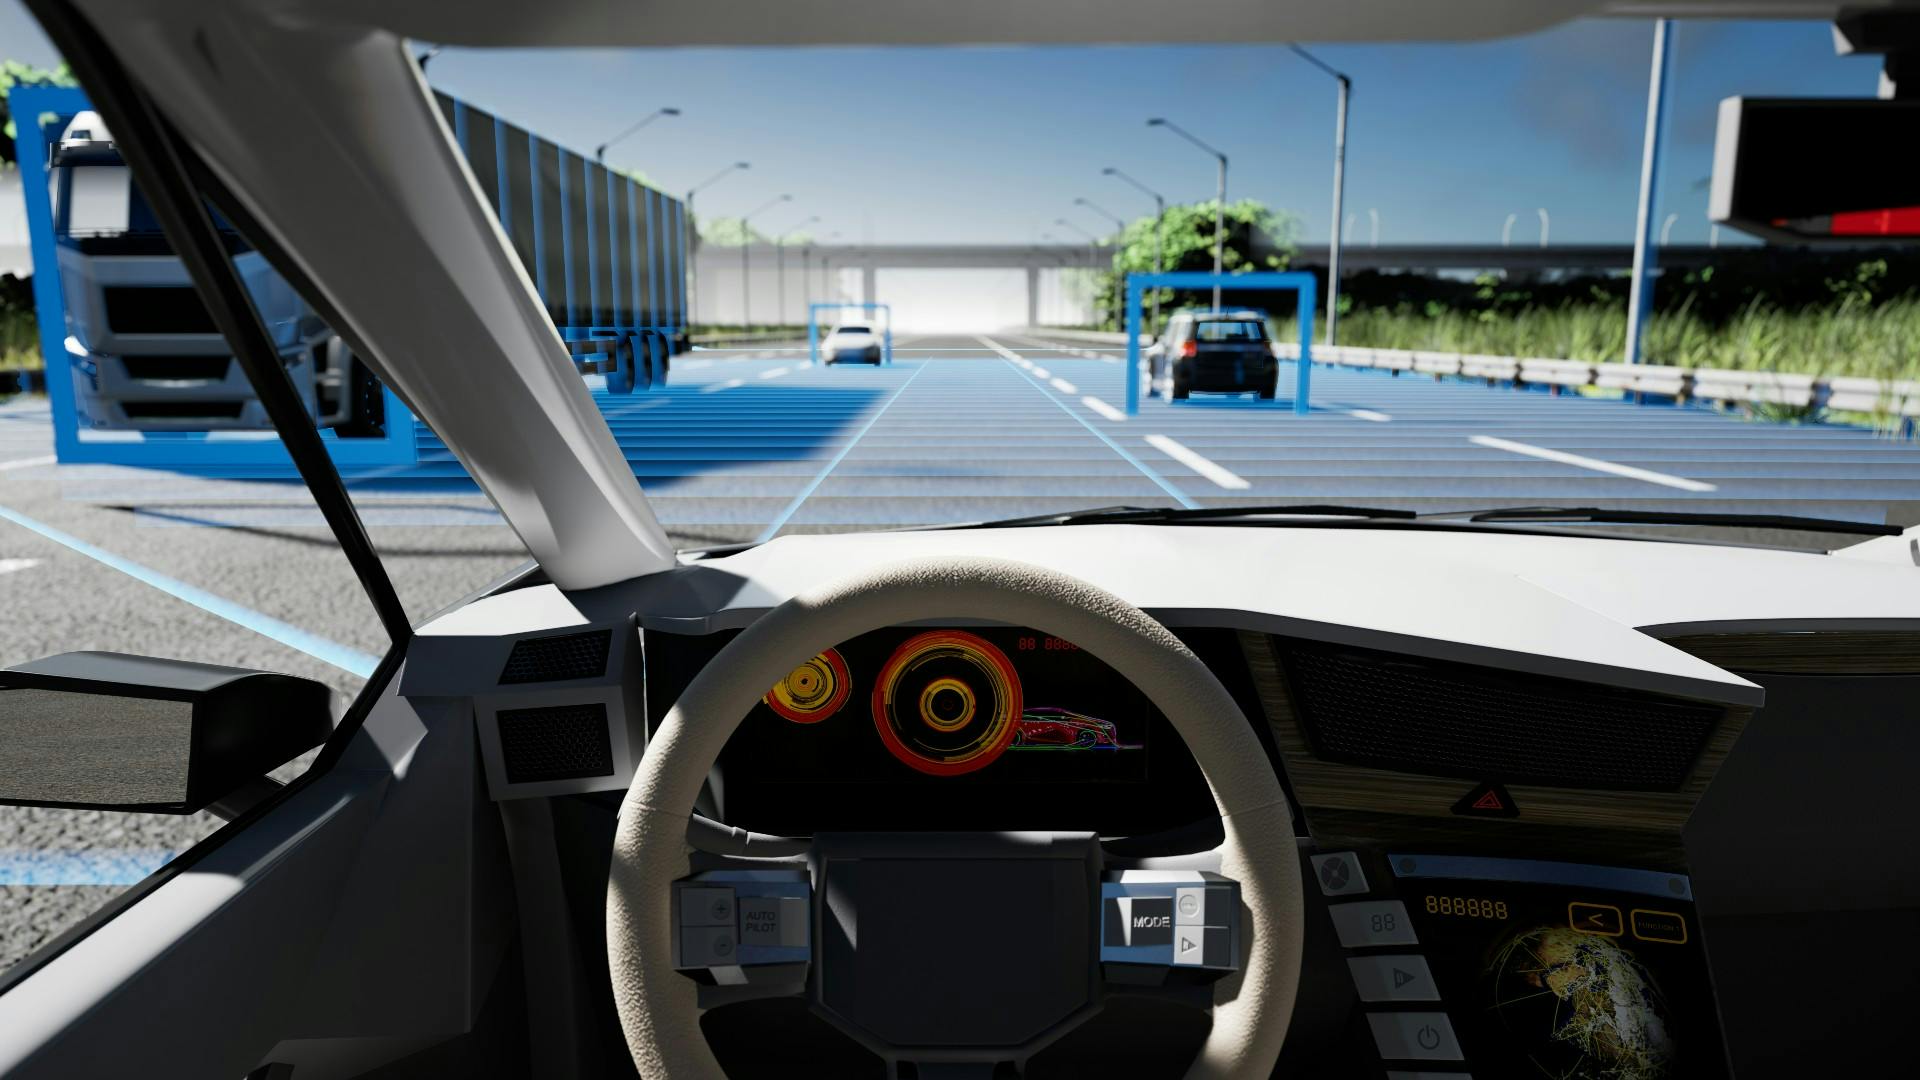 인지 감지 시스템을 통해 도로에서 다른 차량과의 거리를 계산하는 자율주행차(AV)의 내부 모습